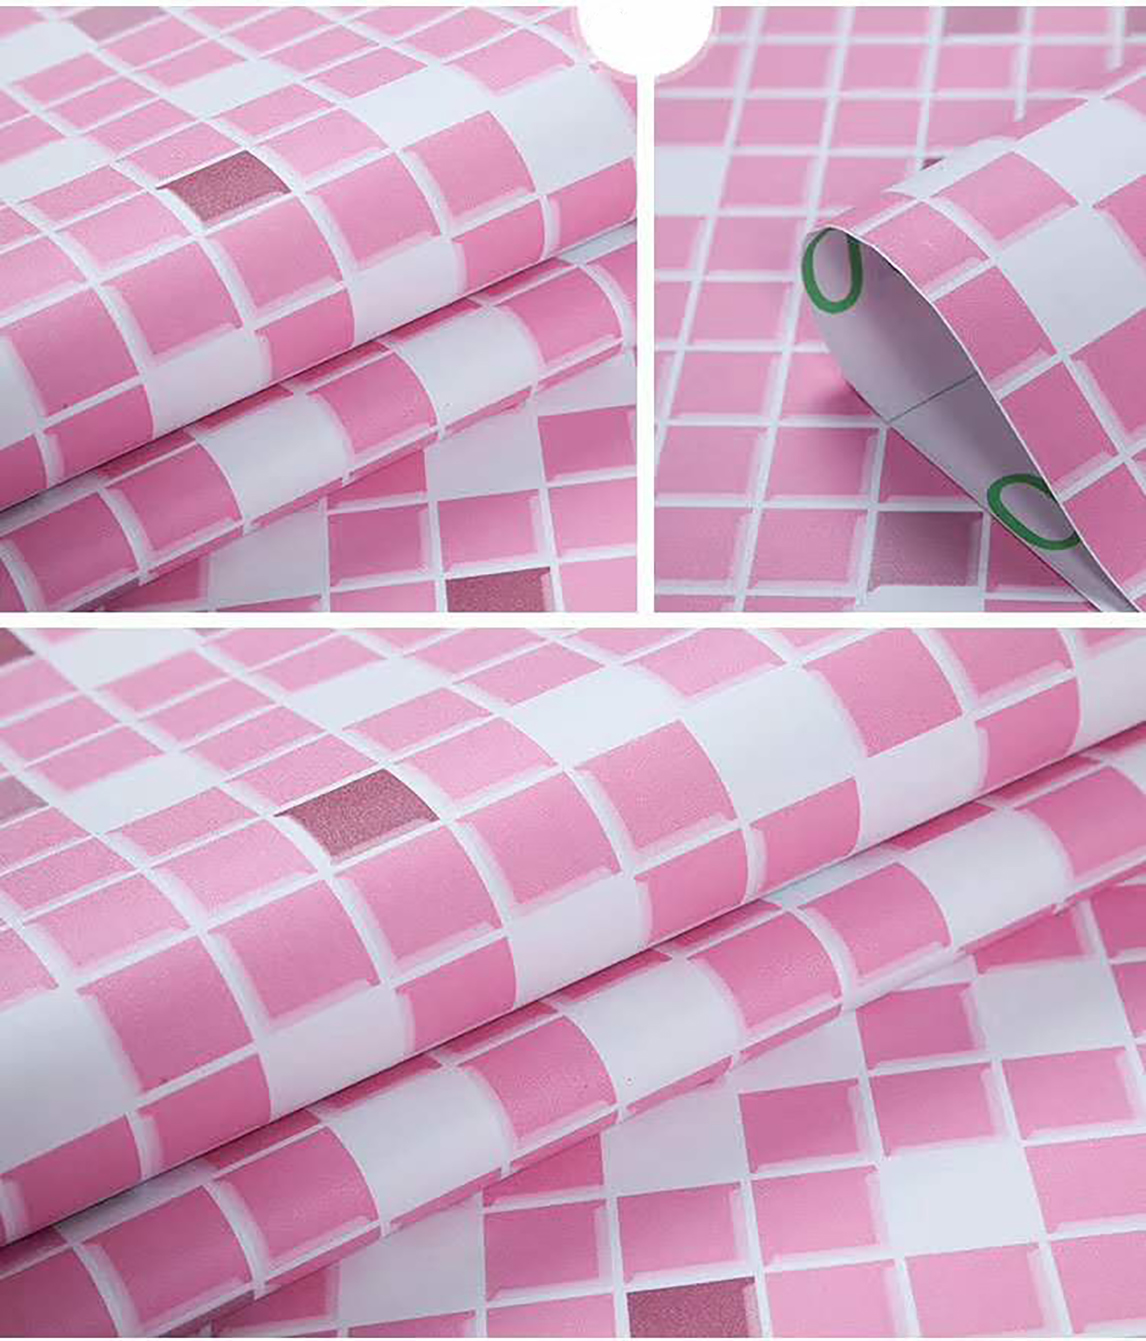 Papel de Parede Adesivo Pastilha Rosa Texturizado P/ Cozinha Banheiro 2mx61cm Lavável Quarto Sala Al - 3